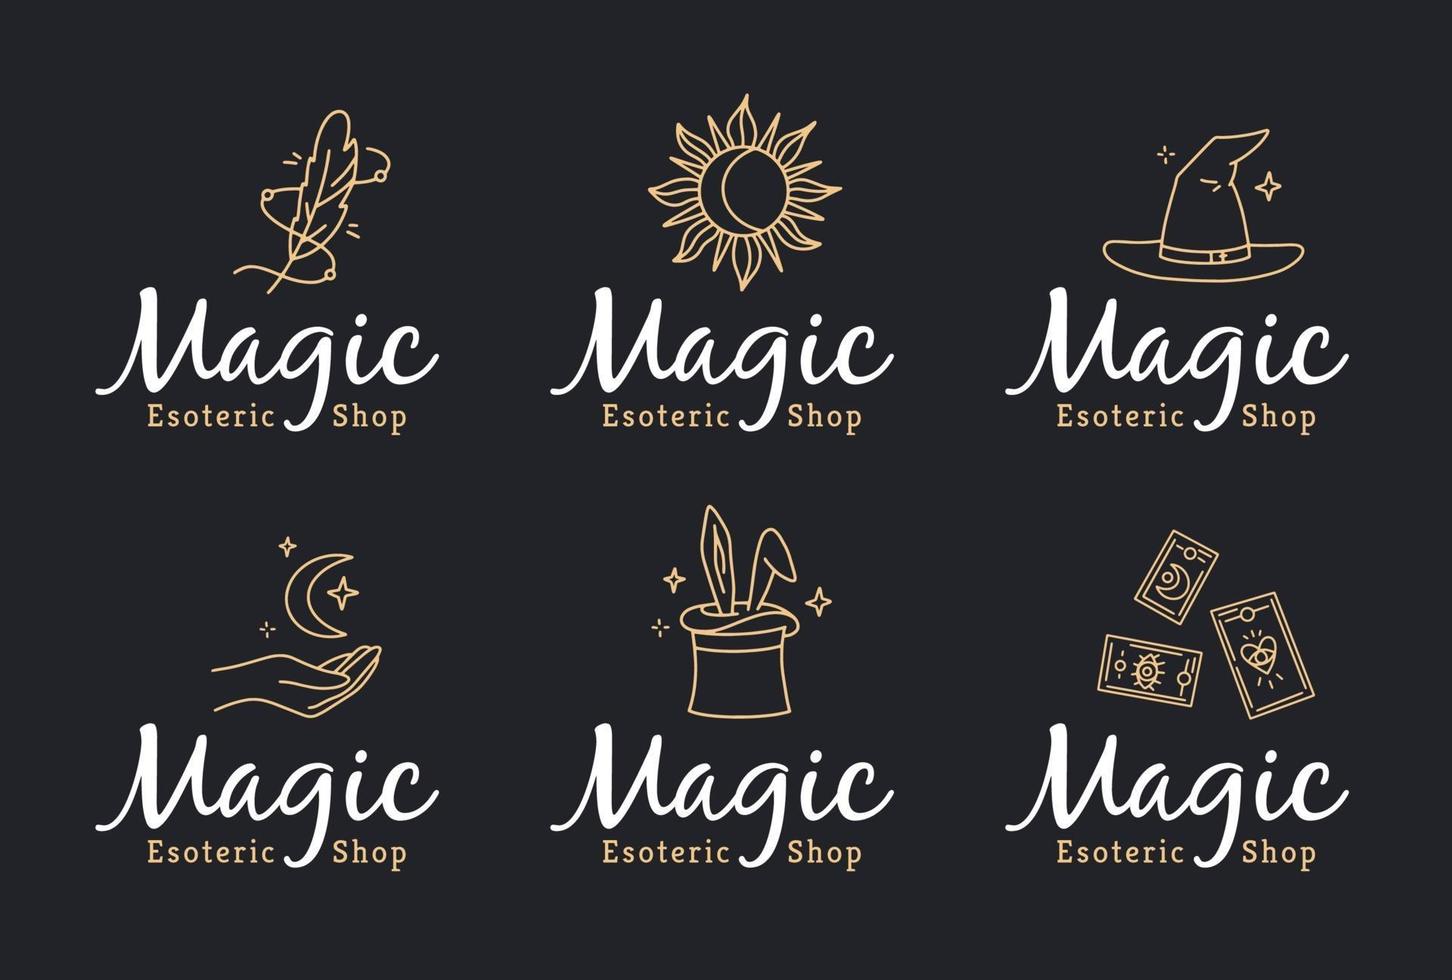 magiska doodle -logotyper för en esoterisk butik vektor